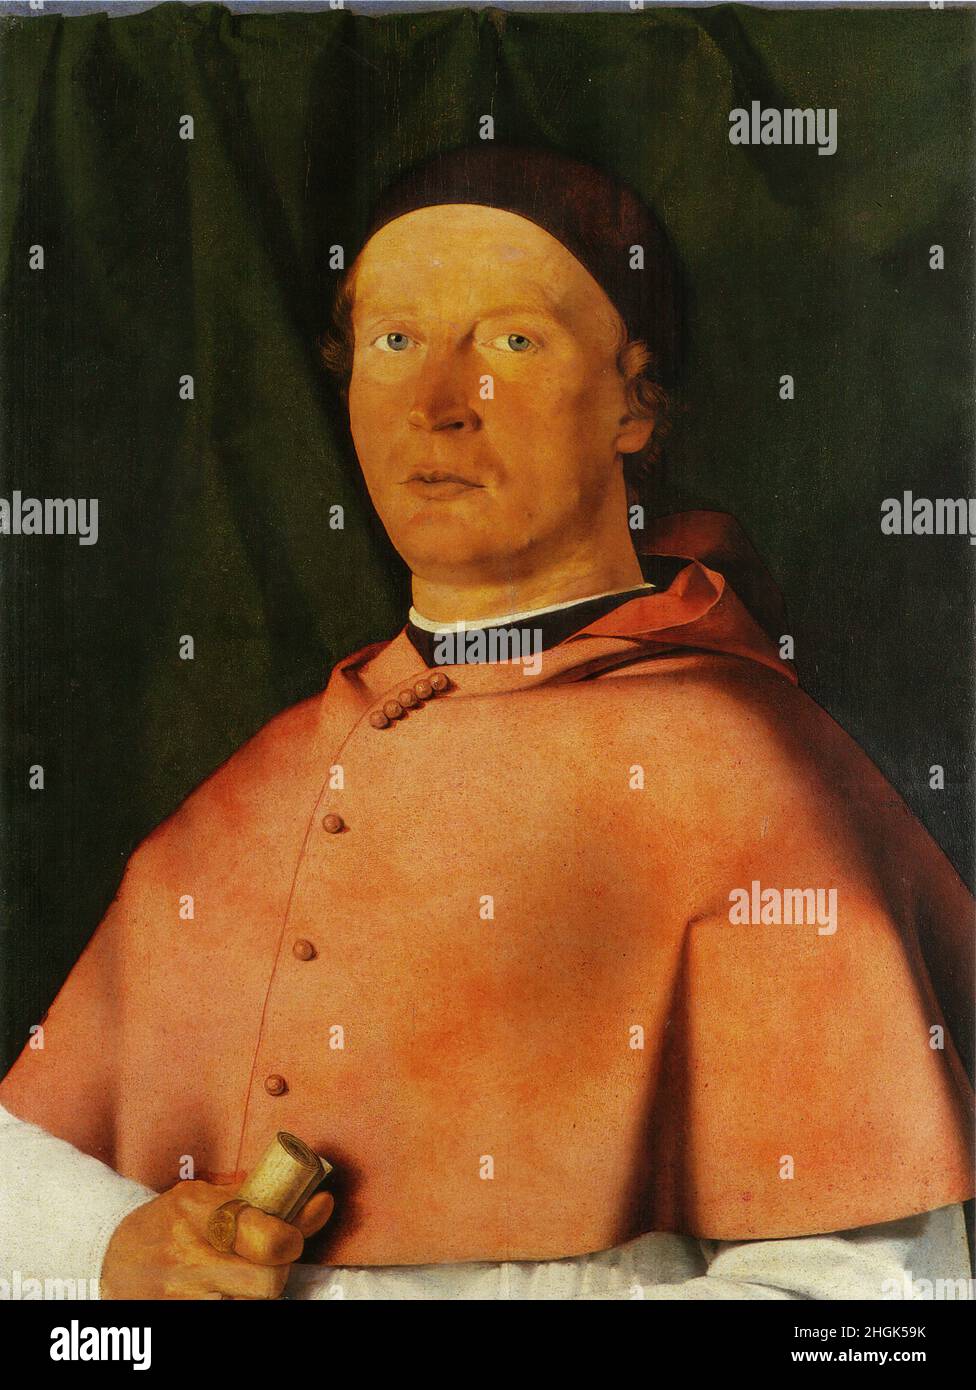 Ritratto del vescovo Bernardo de' Rossi - 1505 - oil on wood 43,5 x 55 cm - Lotto Lorenzo Stock Photo